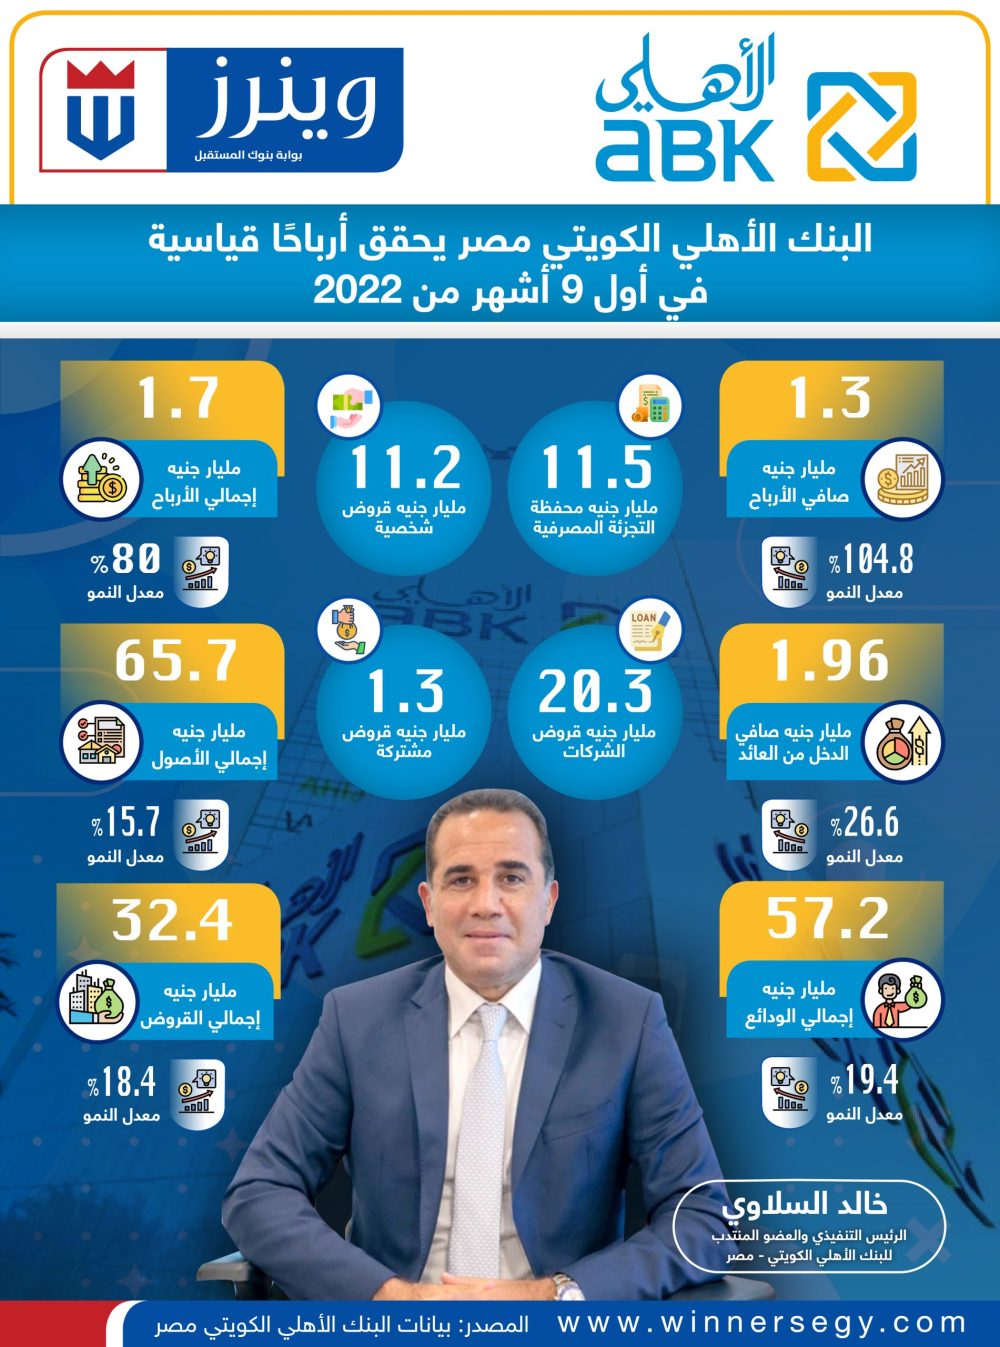 البنك الأهلي الكويتي مصر يحقق أرباحًا قياسية في أول 9 أشهر من 2022